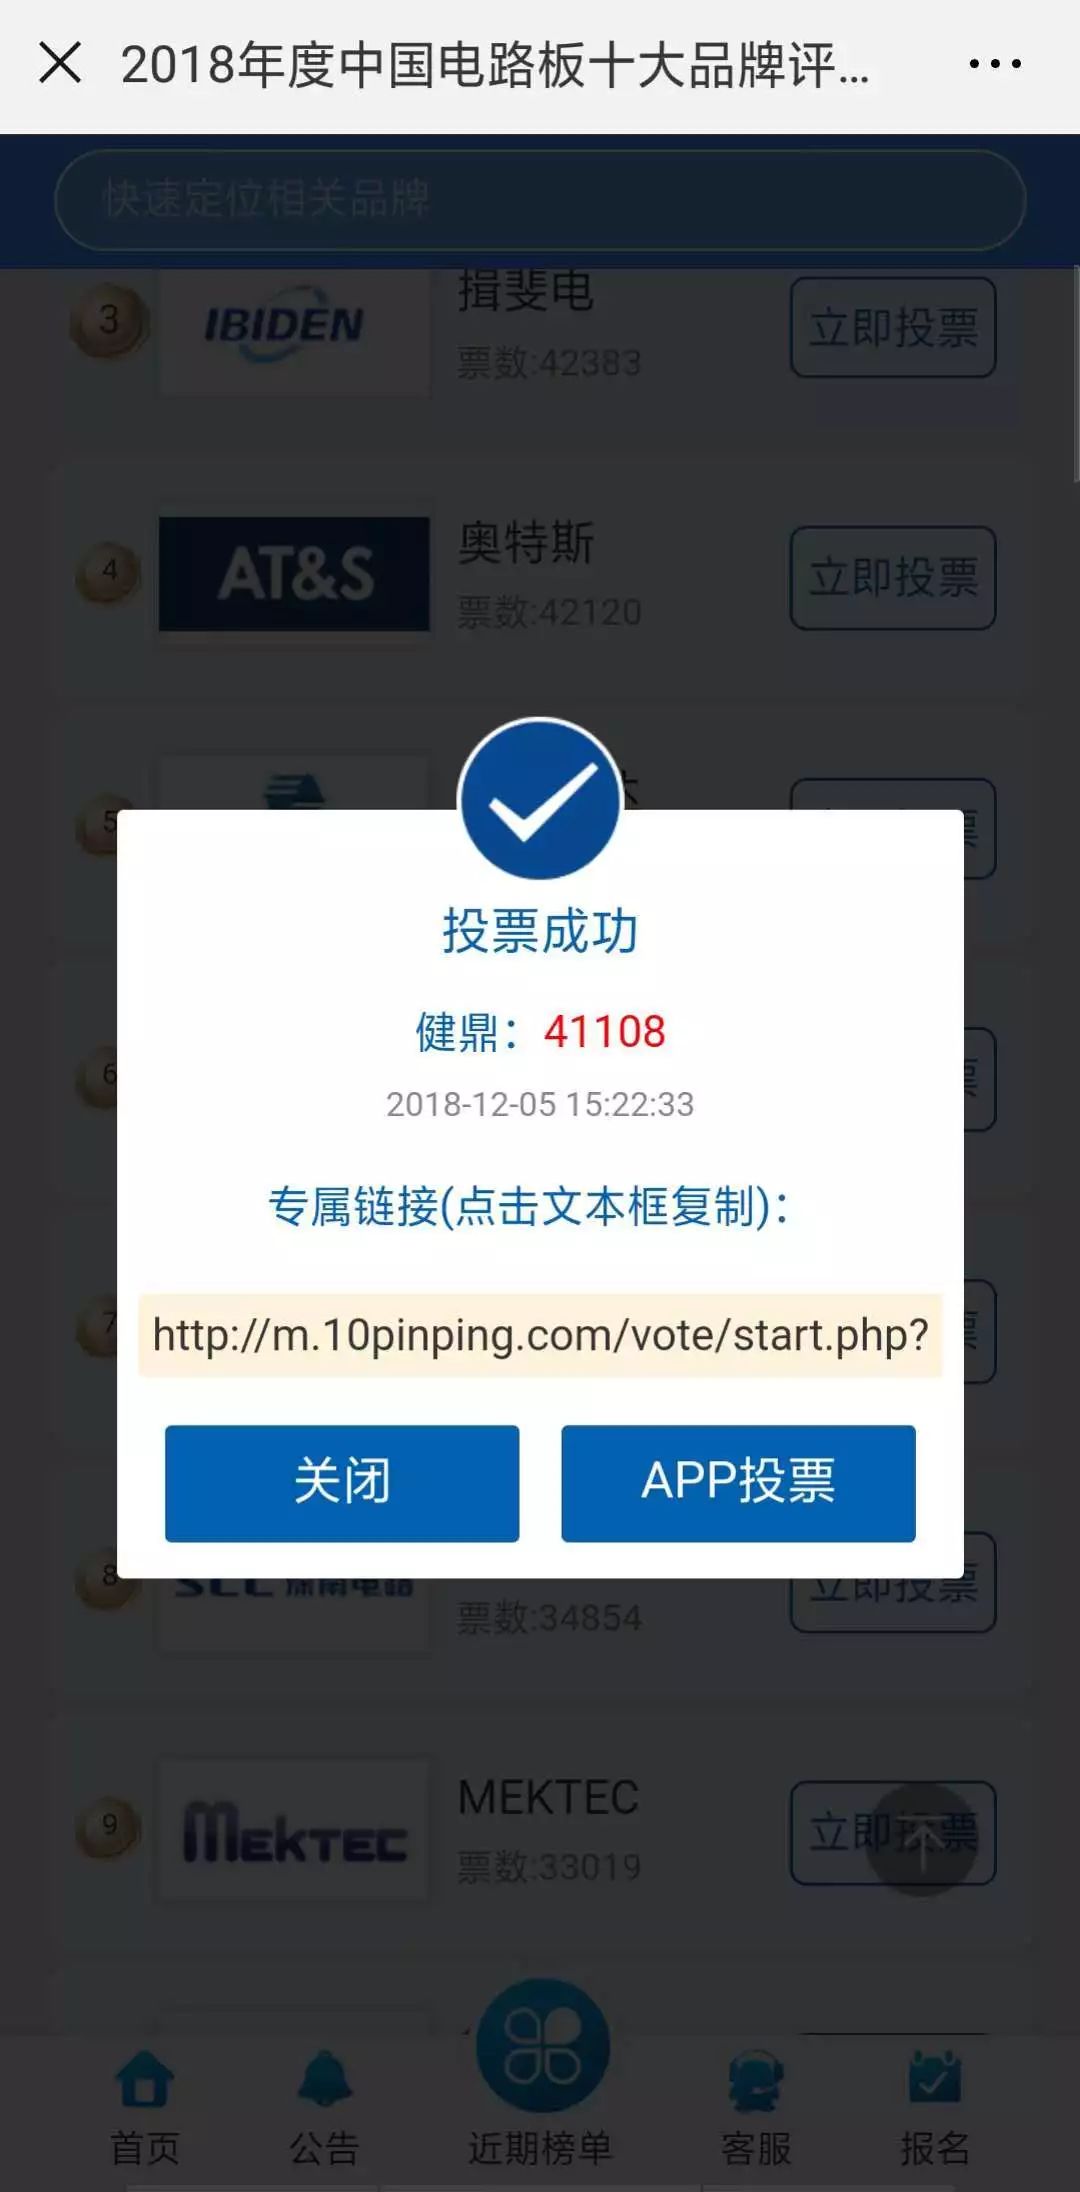 2018年度中国电路板十大品牌评选微信投票有奖活动开始啦本周五第一次